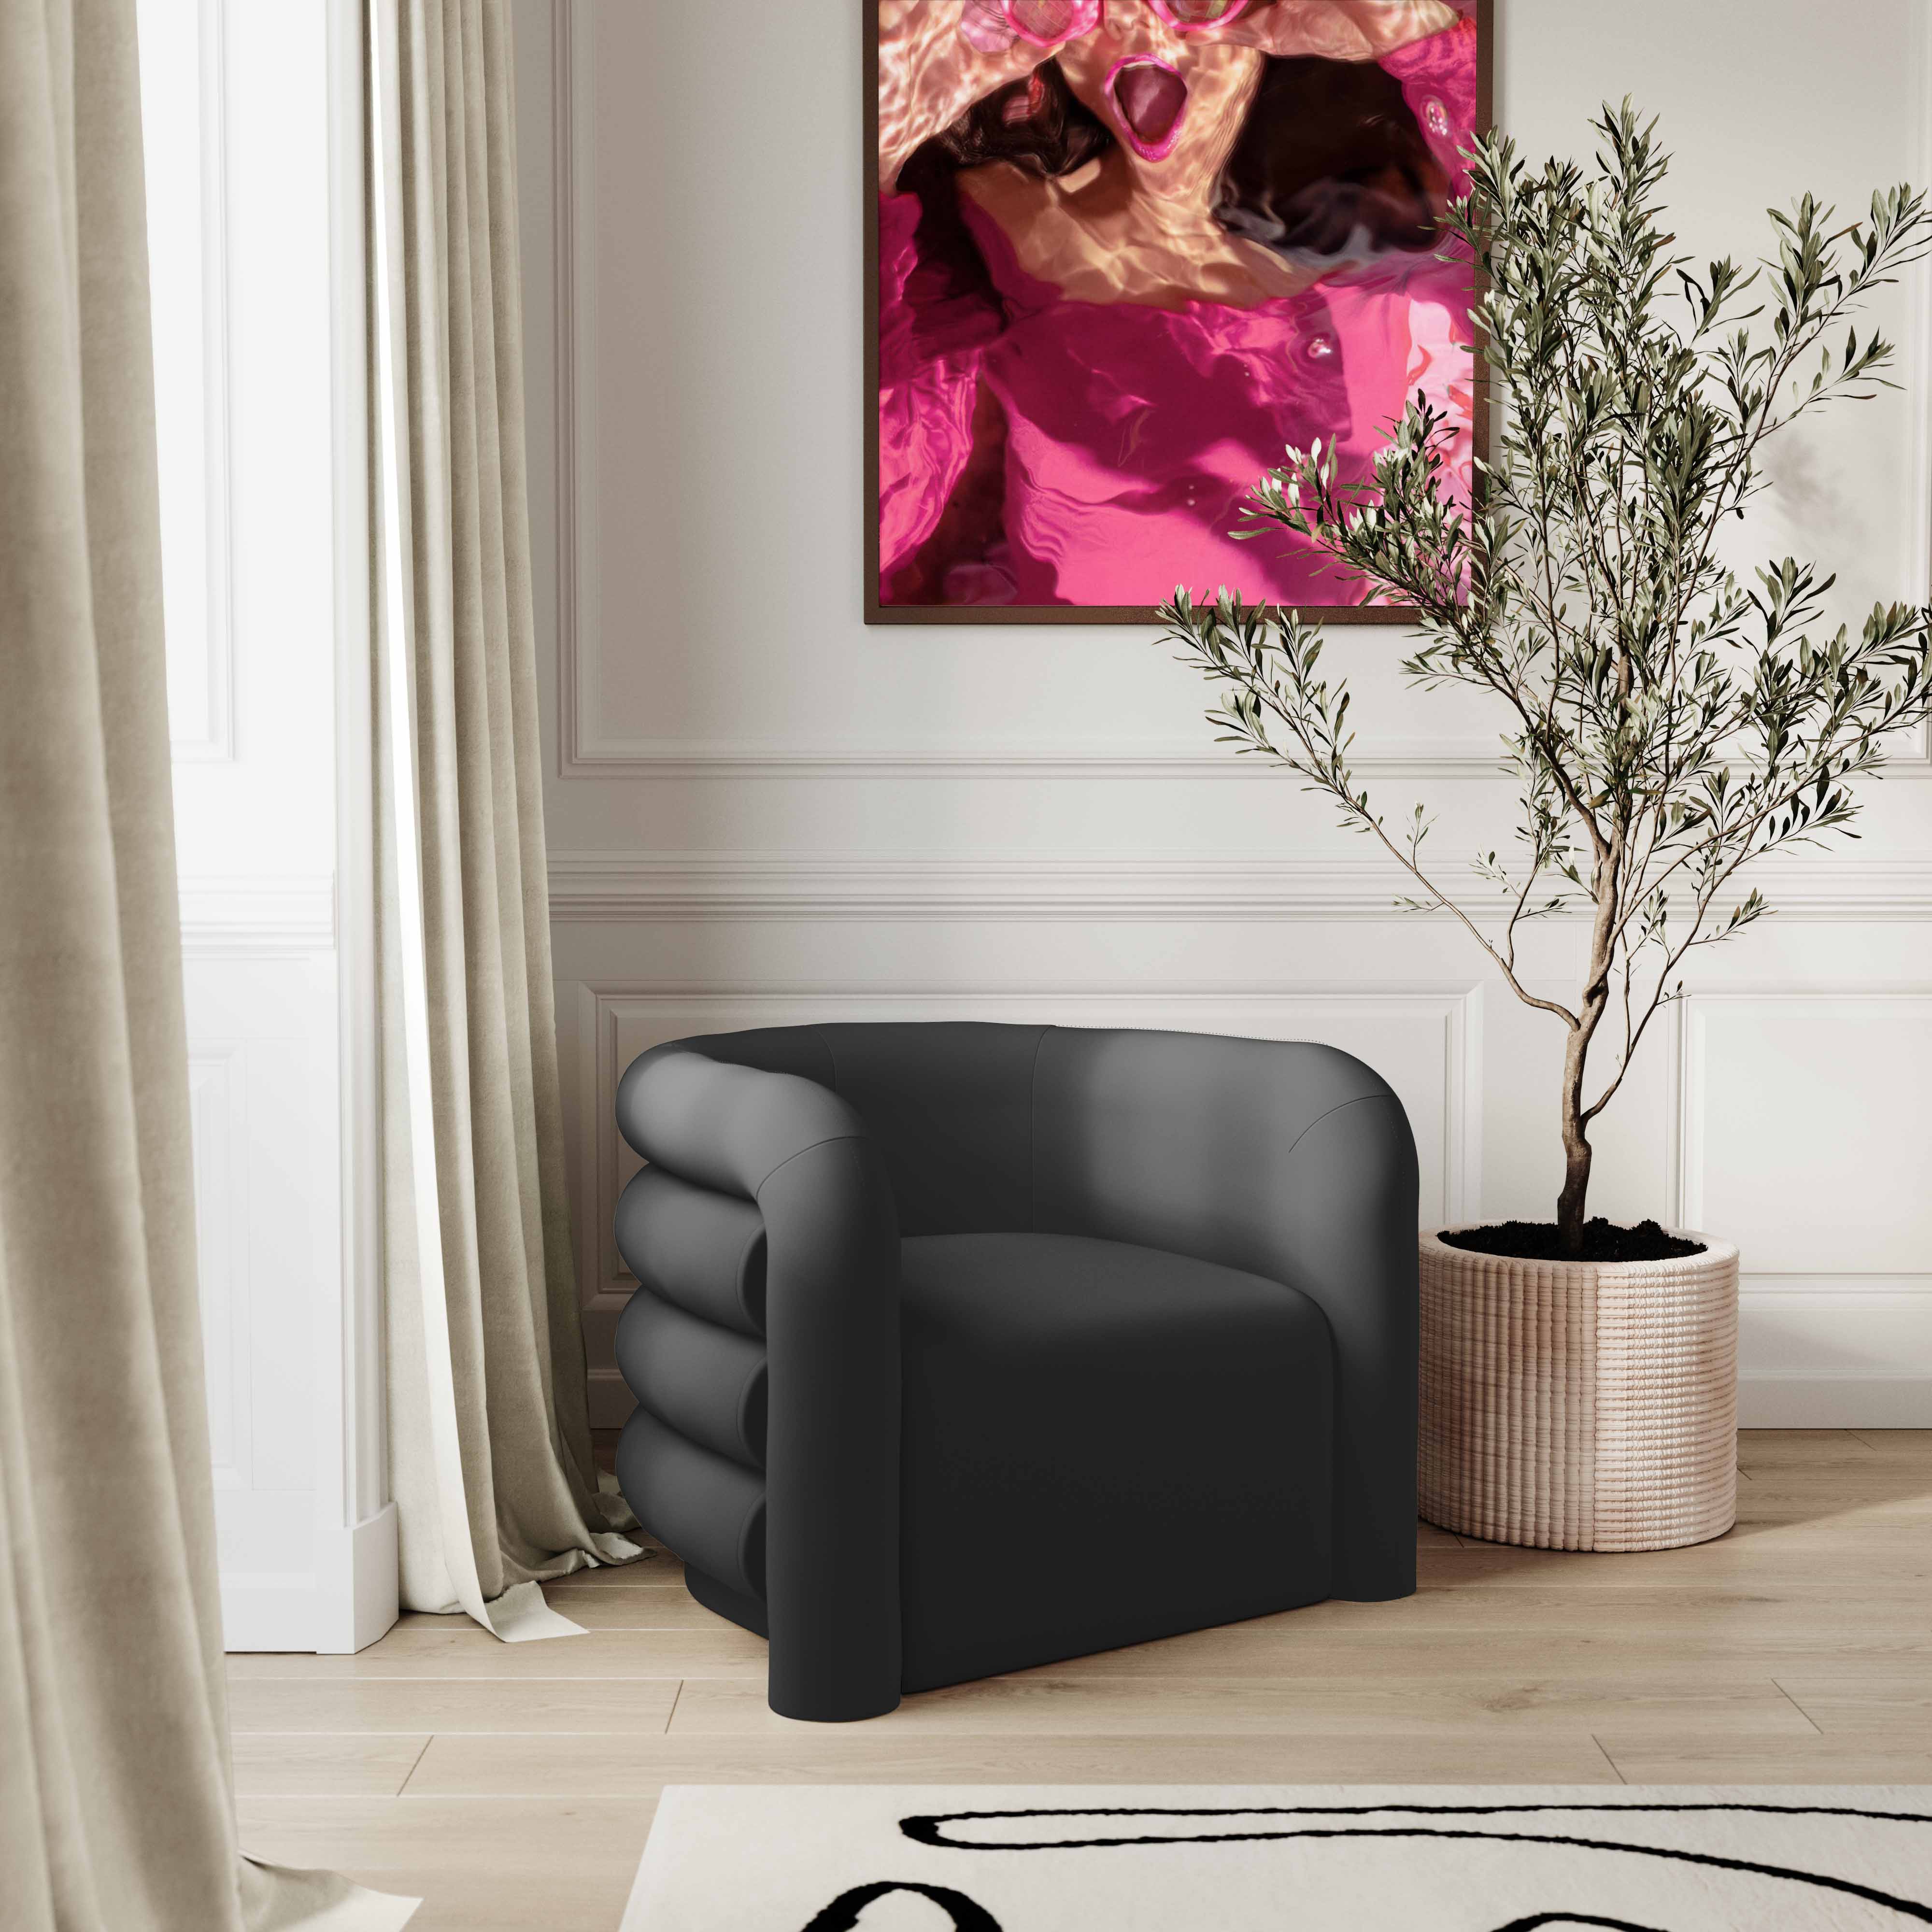 Silla de acento de terciopelo negro con curvas Naira en una sala moderna.